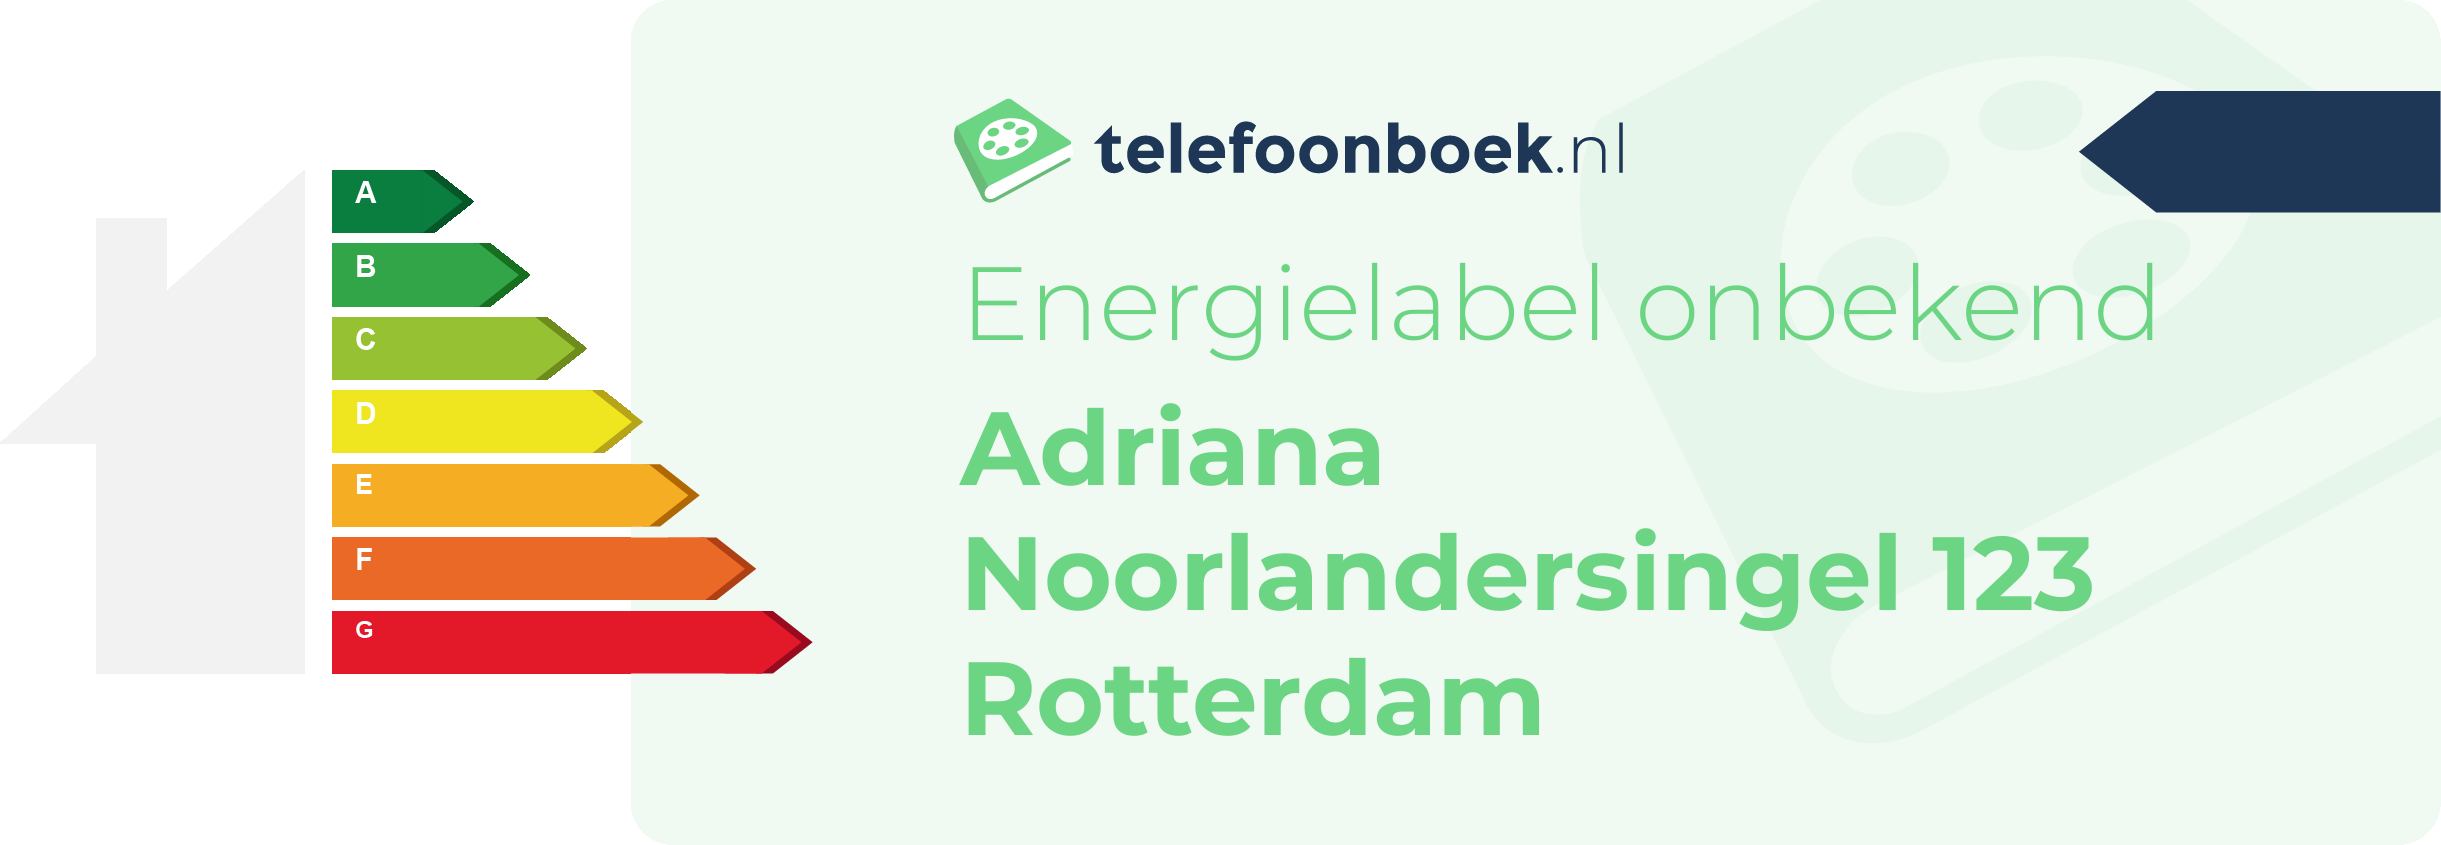 Energielabel Adriana Noorlandersingel 123 Rotterdam